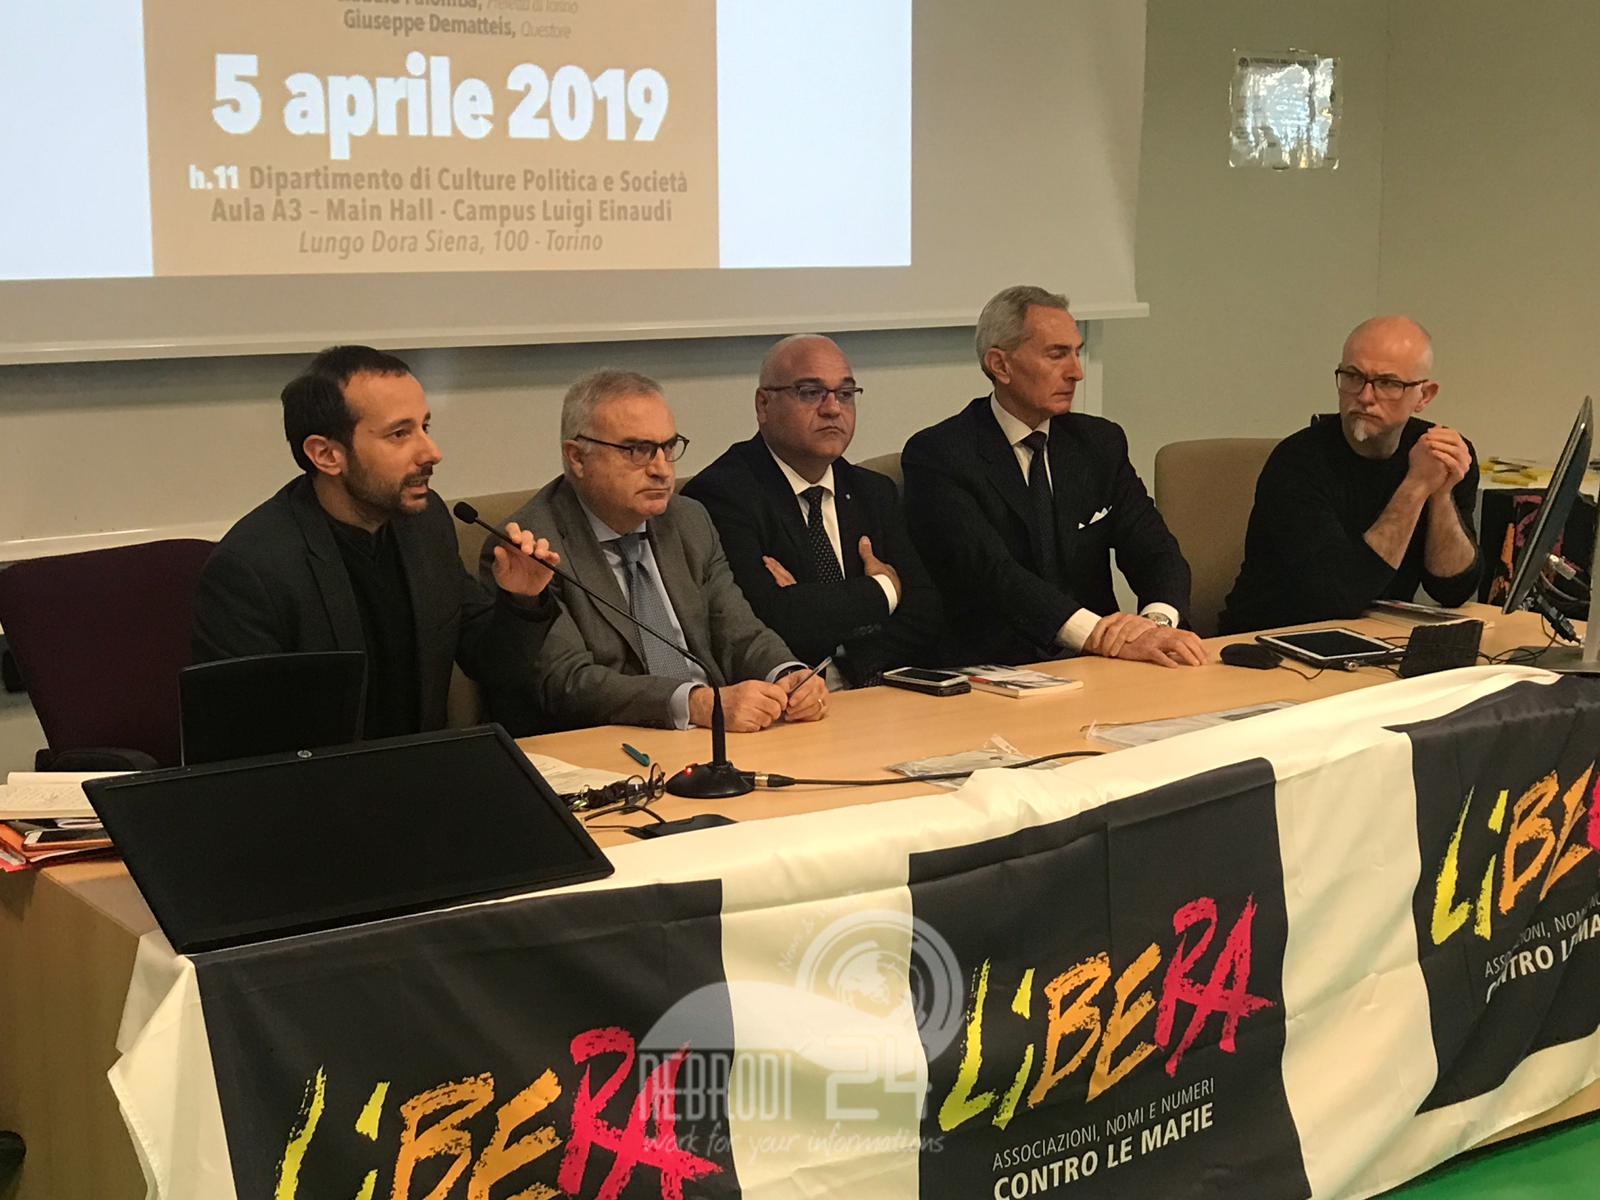 Libri & Legalità – “La mafia dei pascoli” di Antoci e Anselmo  presentato all’Università di Torino